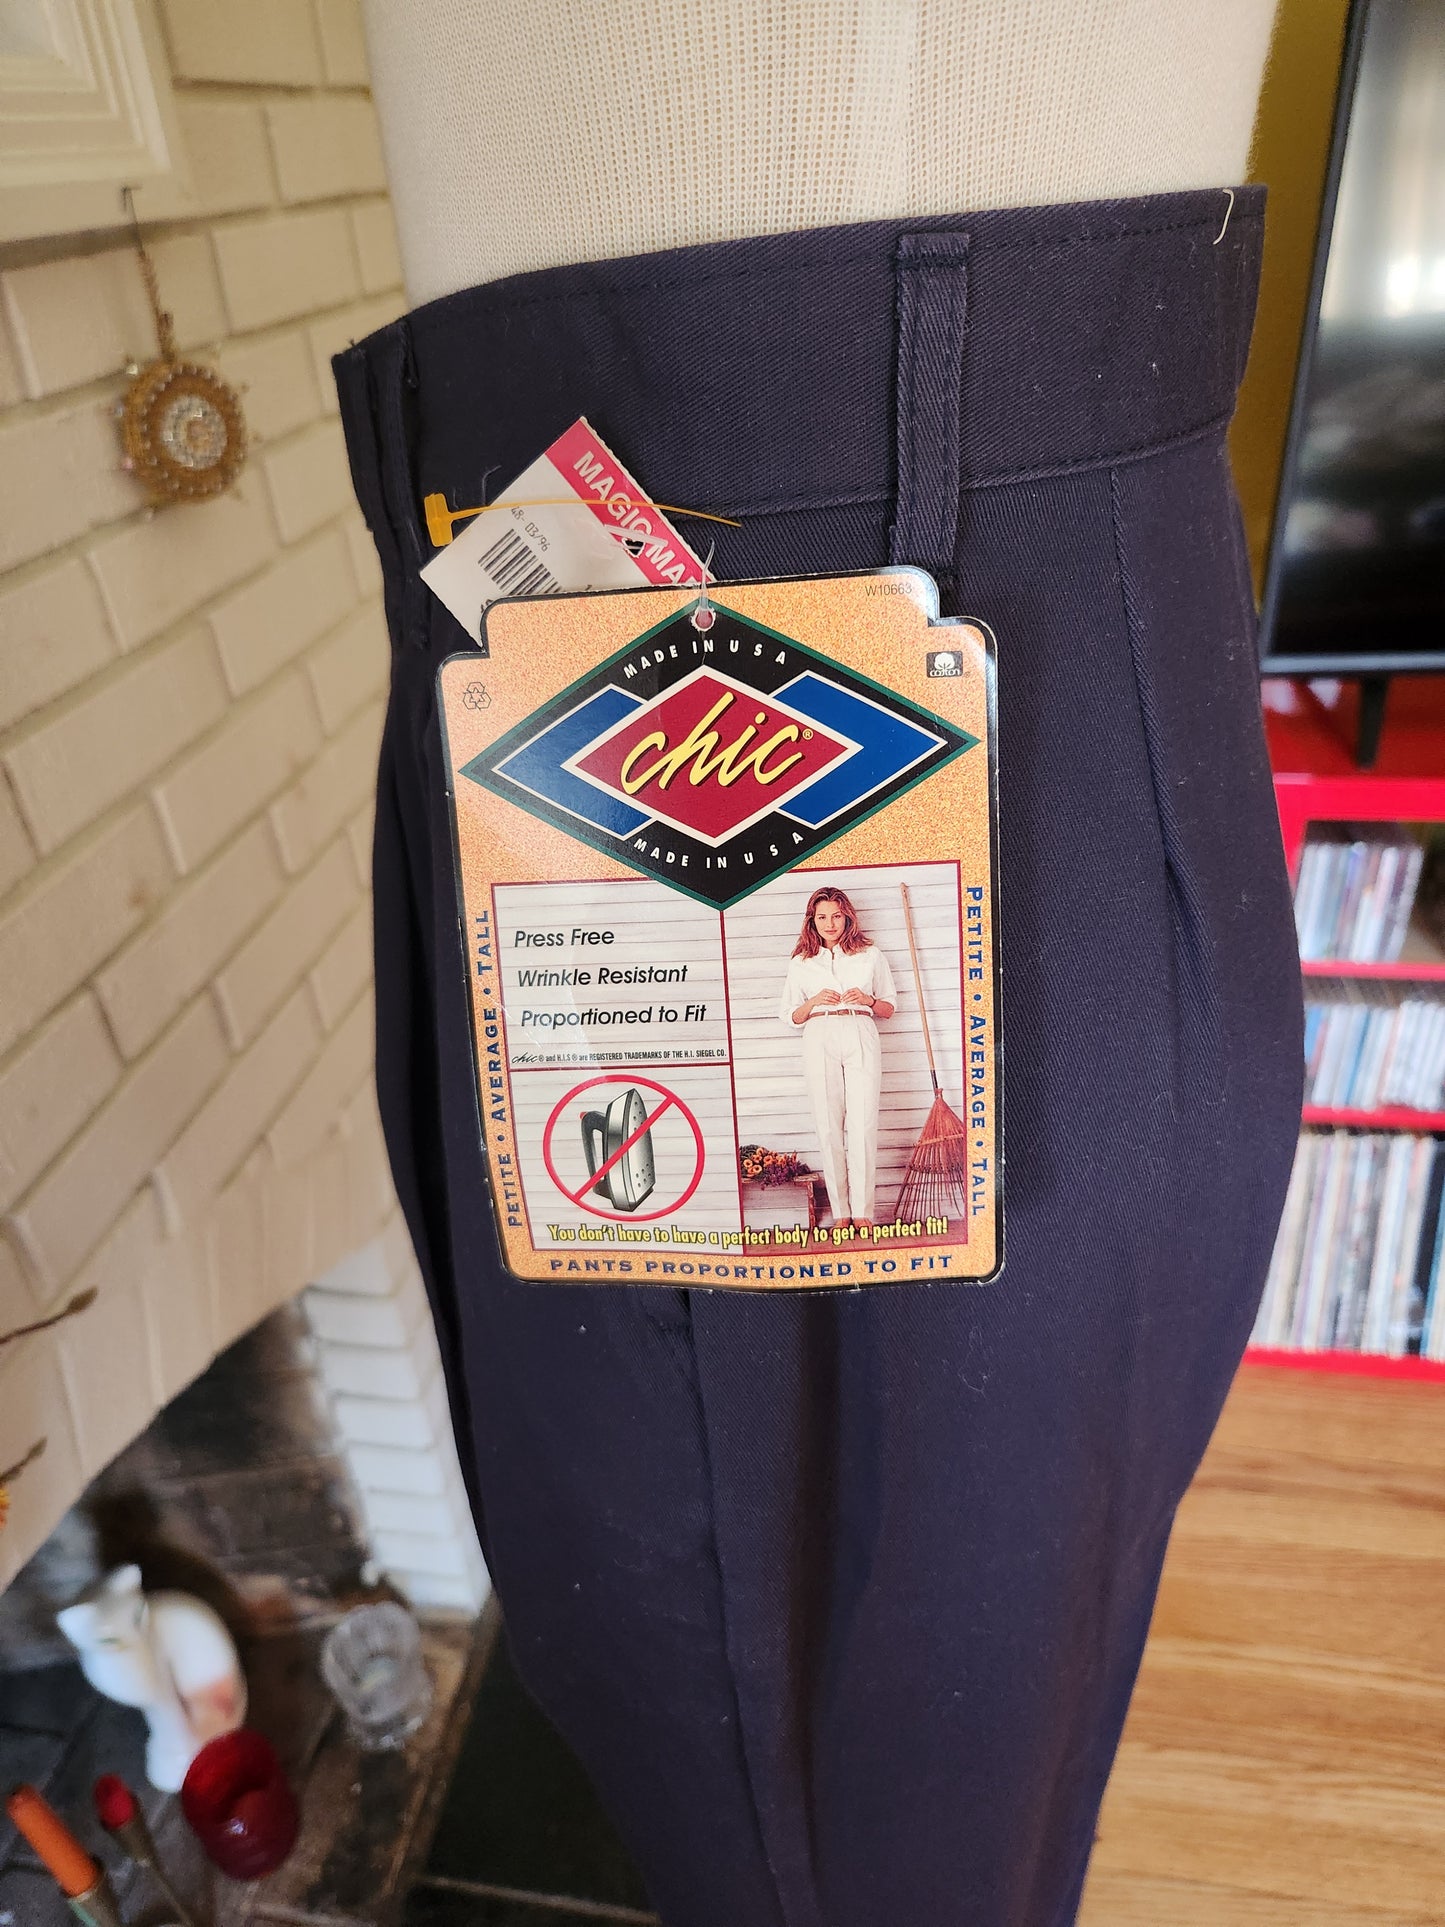 Vintage Pleated Pants by Chic UNWORN!